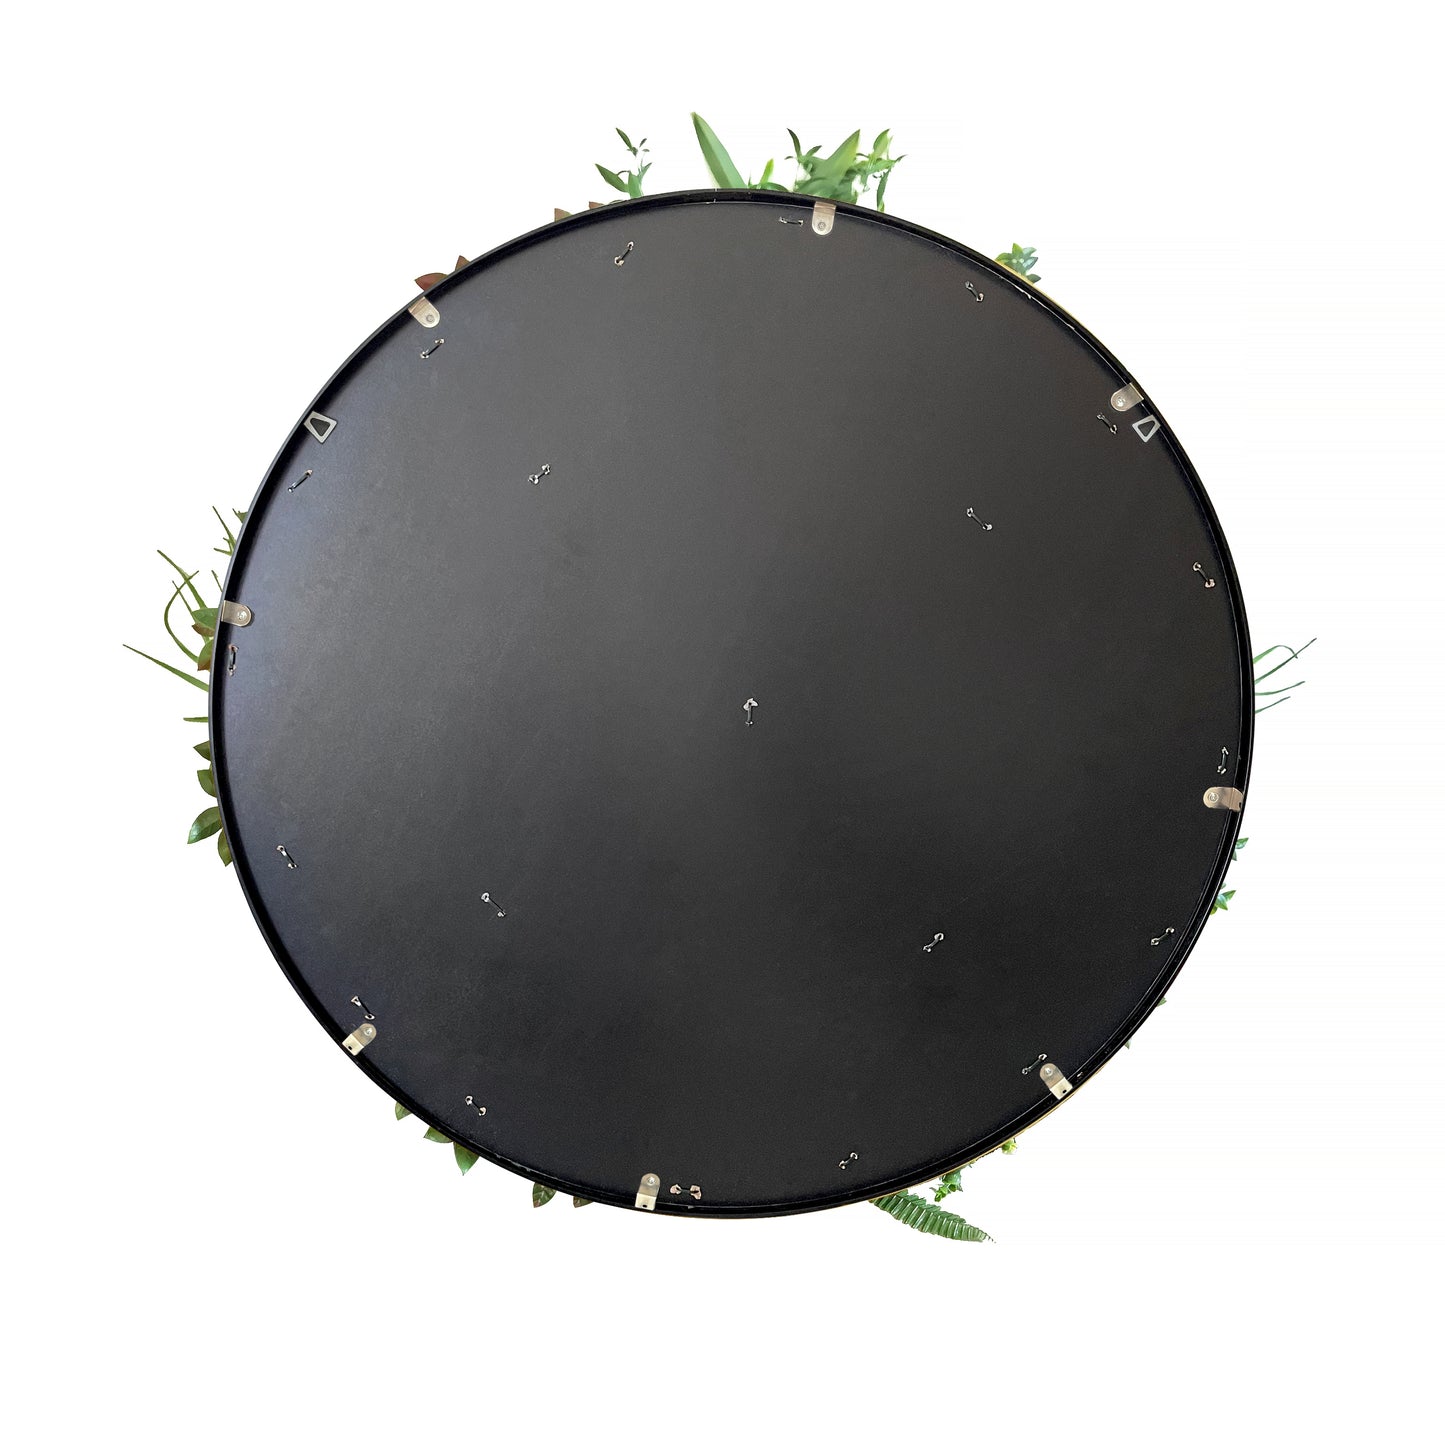 Floret artificial green disc 1m diameter